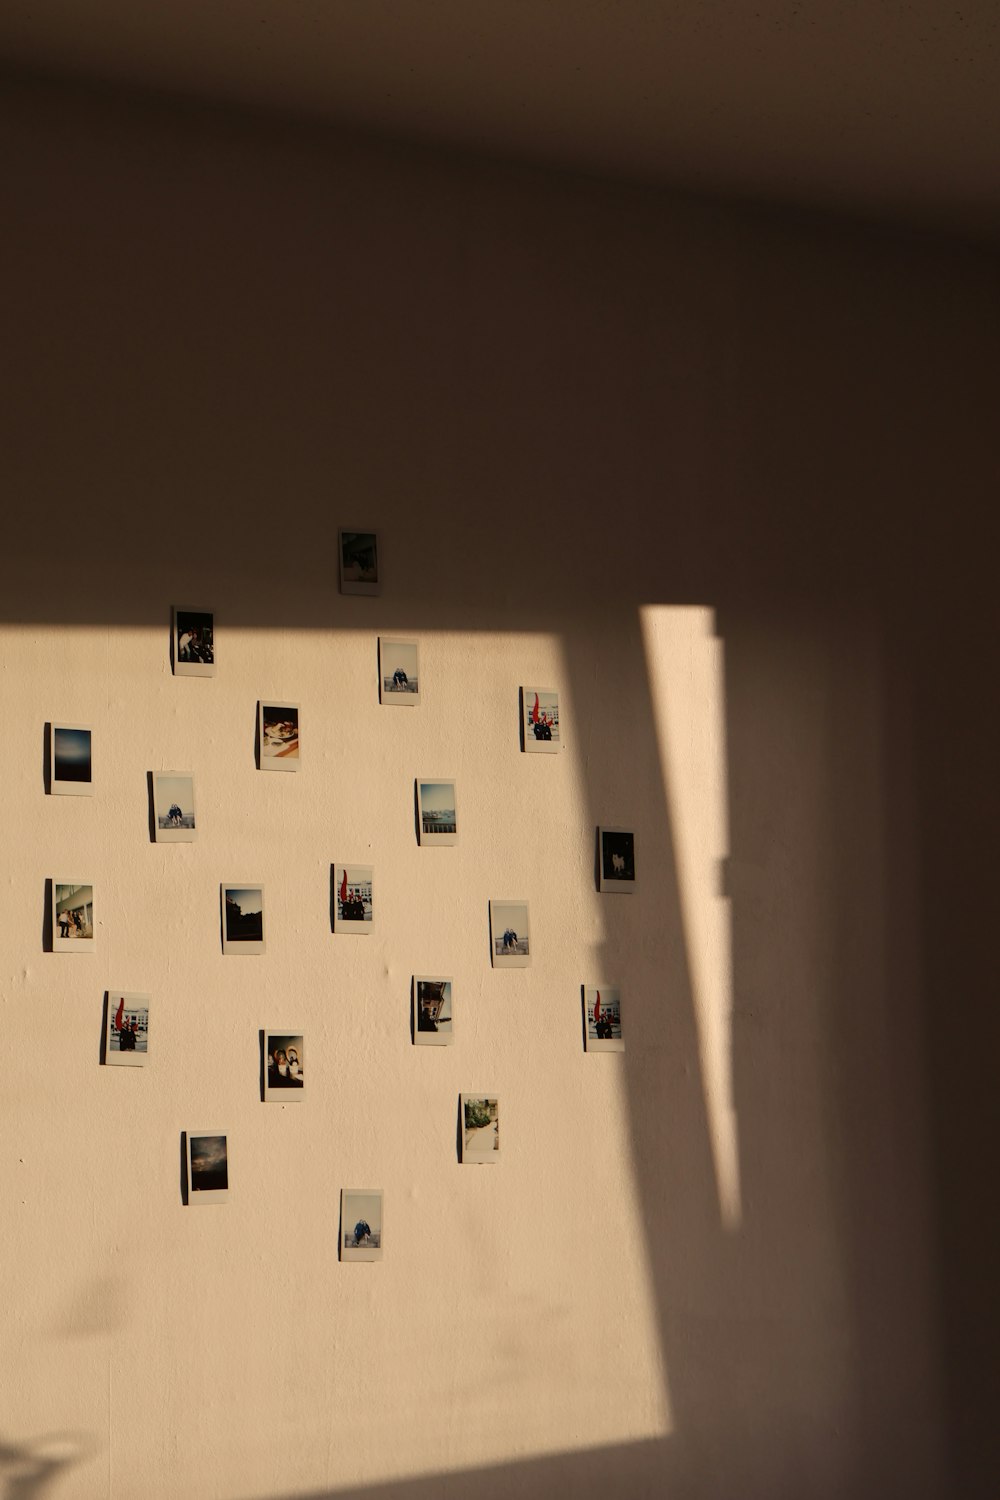 Muro Di Polaroid Immagini  Scarica immagini gratuite su Unsplash